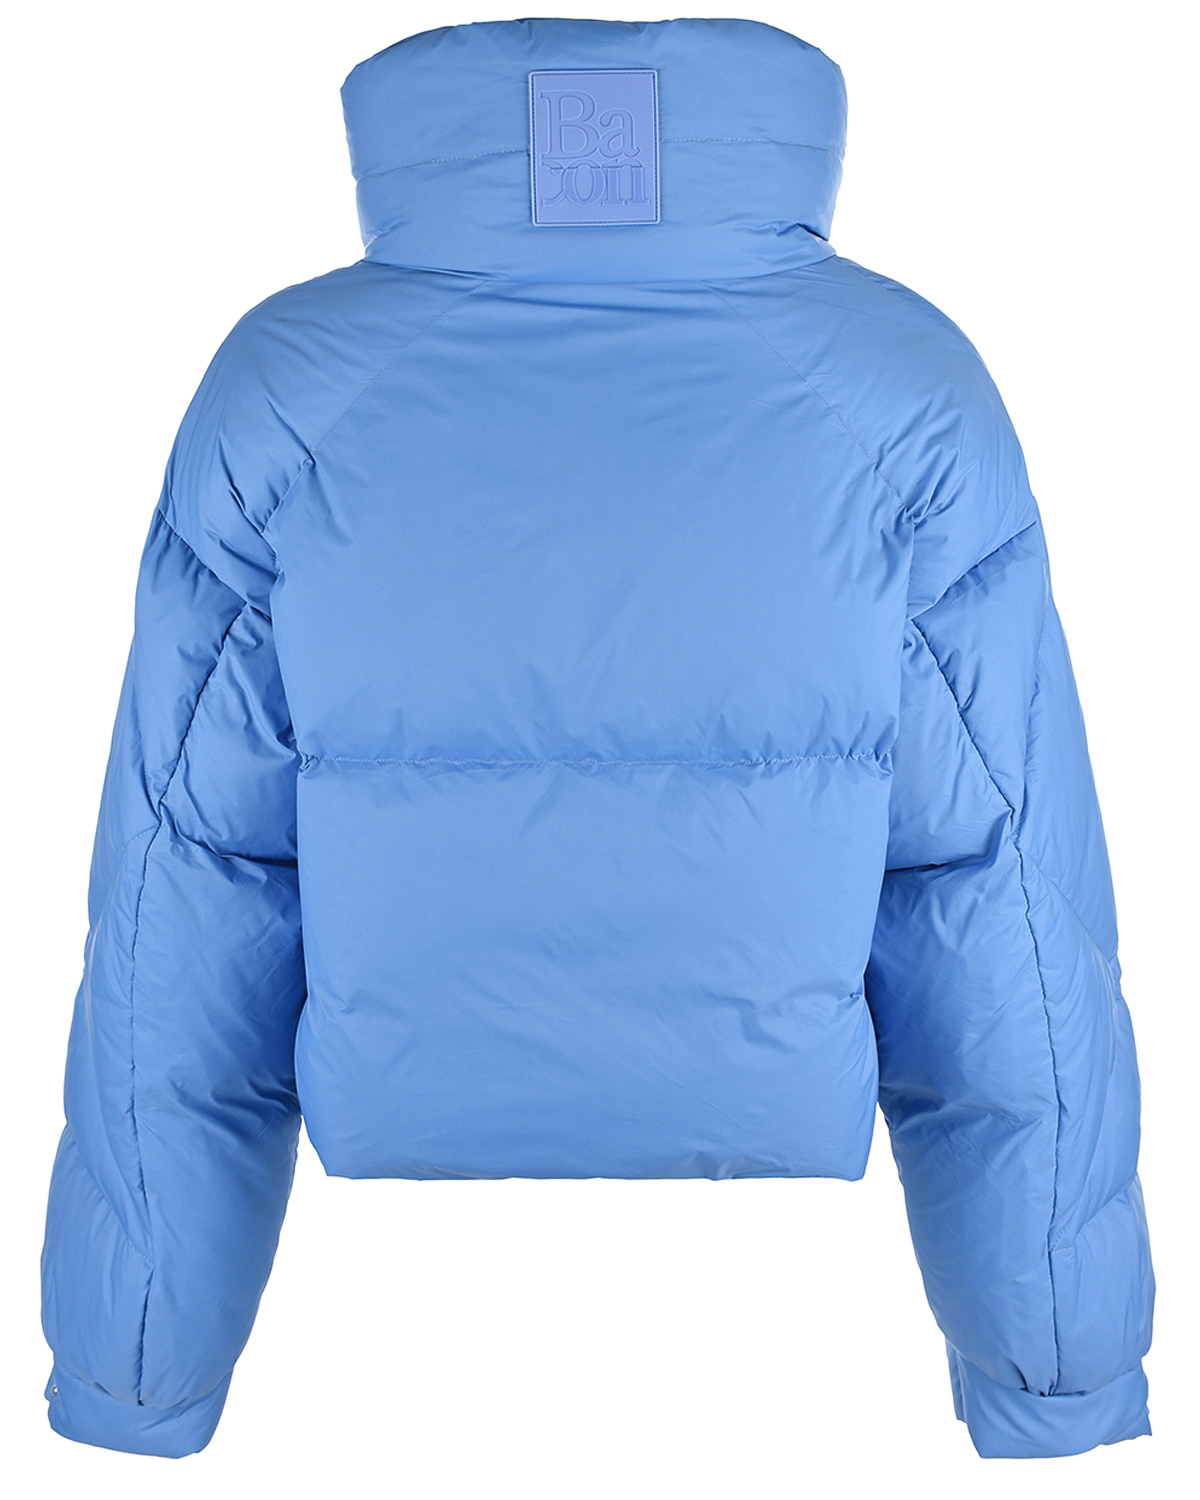 Укороченная синяя куртка Bacon, размер 38, цвет синий - фото 4